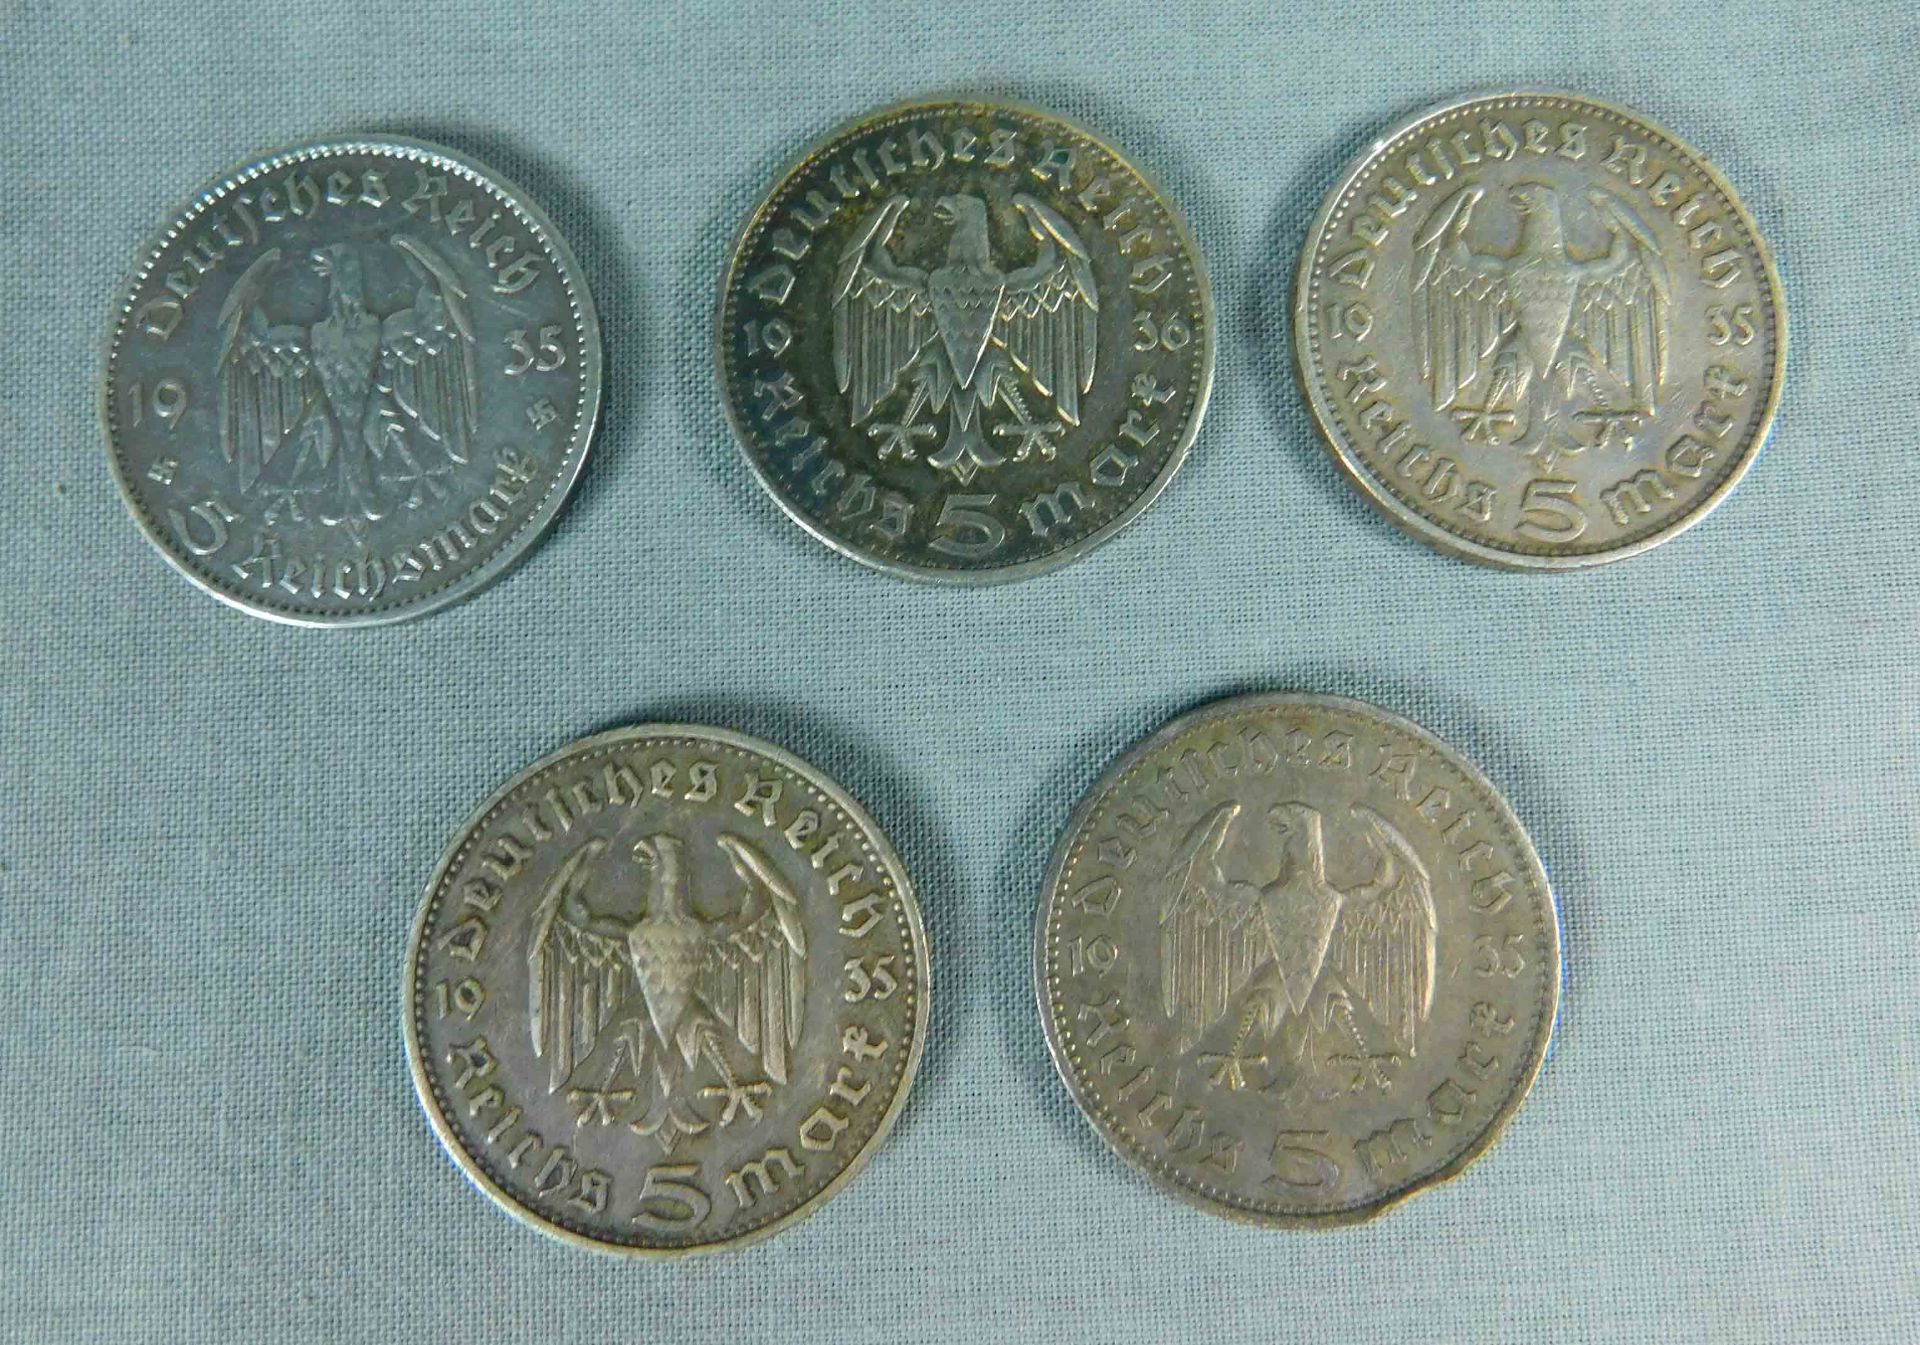 5 x 5 Reichsmark. Silbermünzen. Deutsches Reich. 1935. 1936. - Image 2 of 10